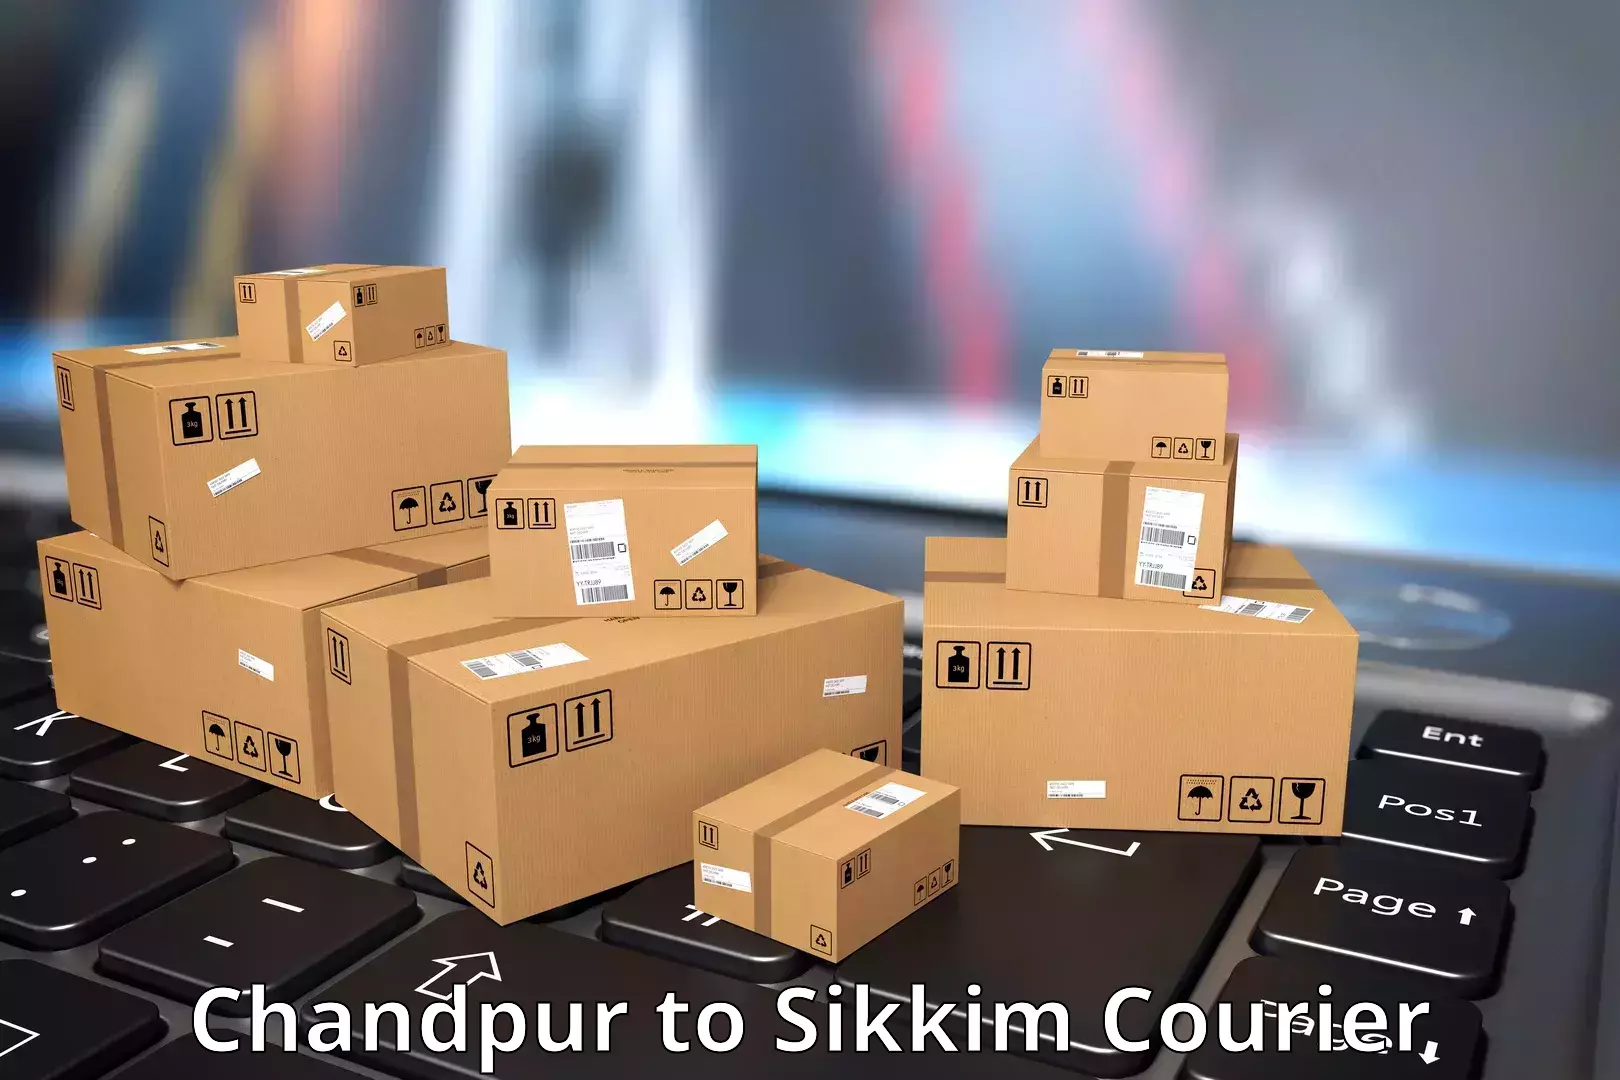 Courier service comparison Chandpur to Jorethang